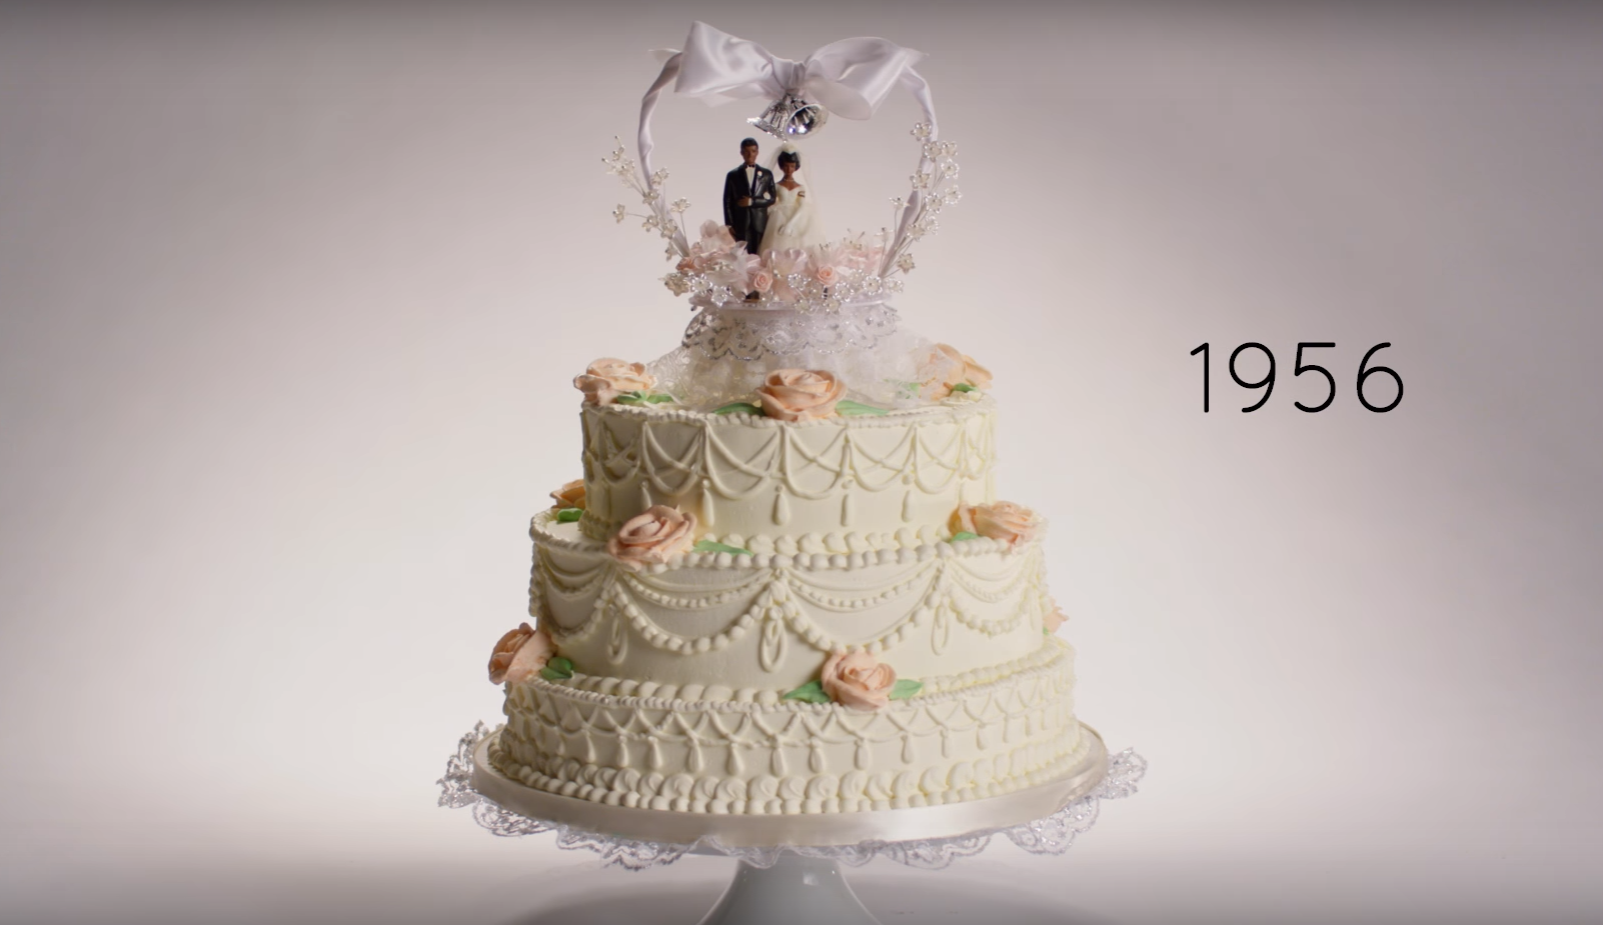 Los pasteles de boda, desde 1916 hasta hoy